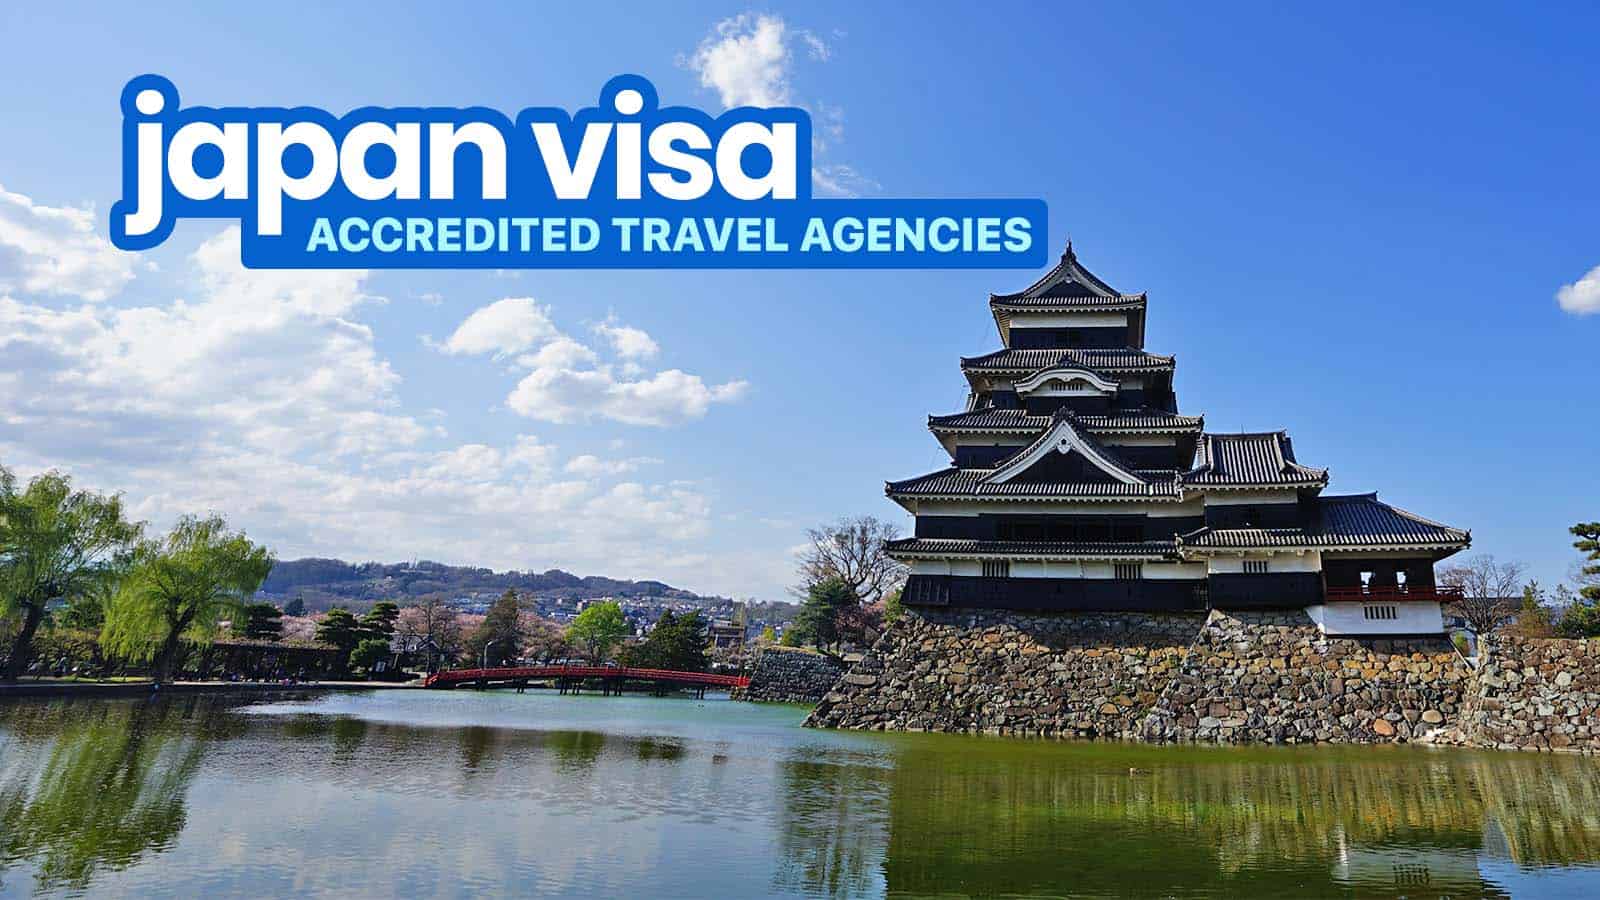 日本签证:大使馆认可的旅行社名单